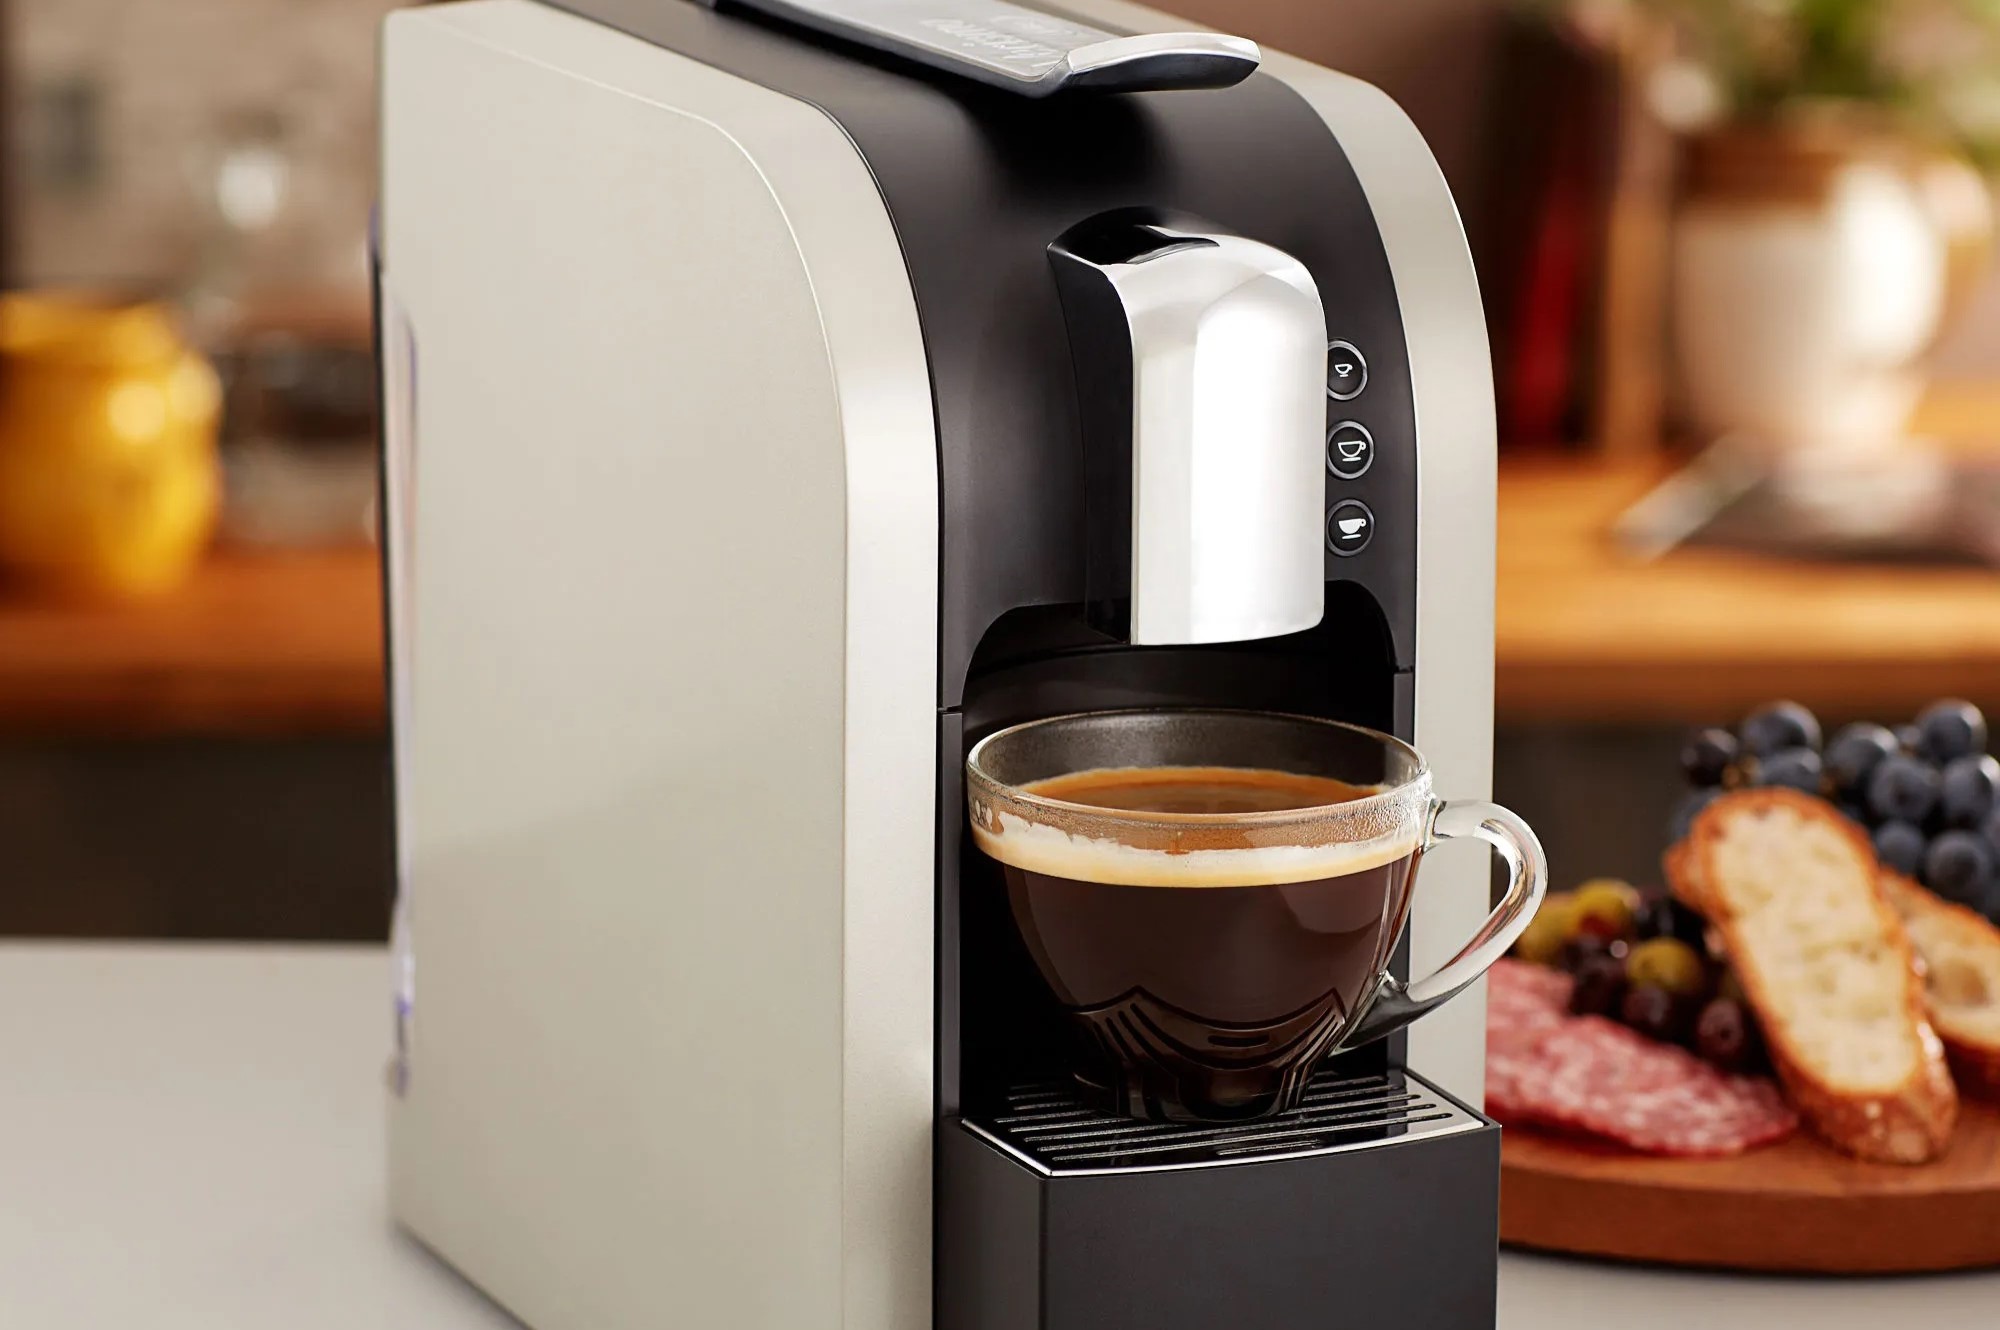 Aicook Espresso And Coffee Machine, 3 In 1 Combination 15Bar